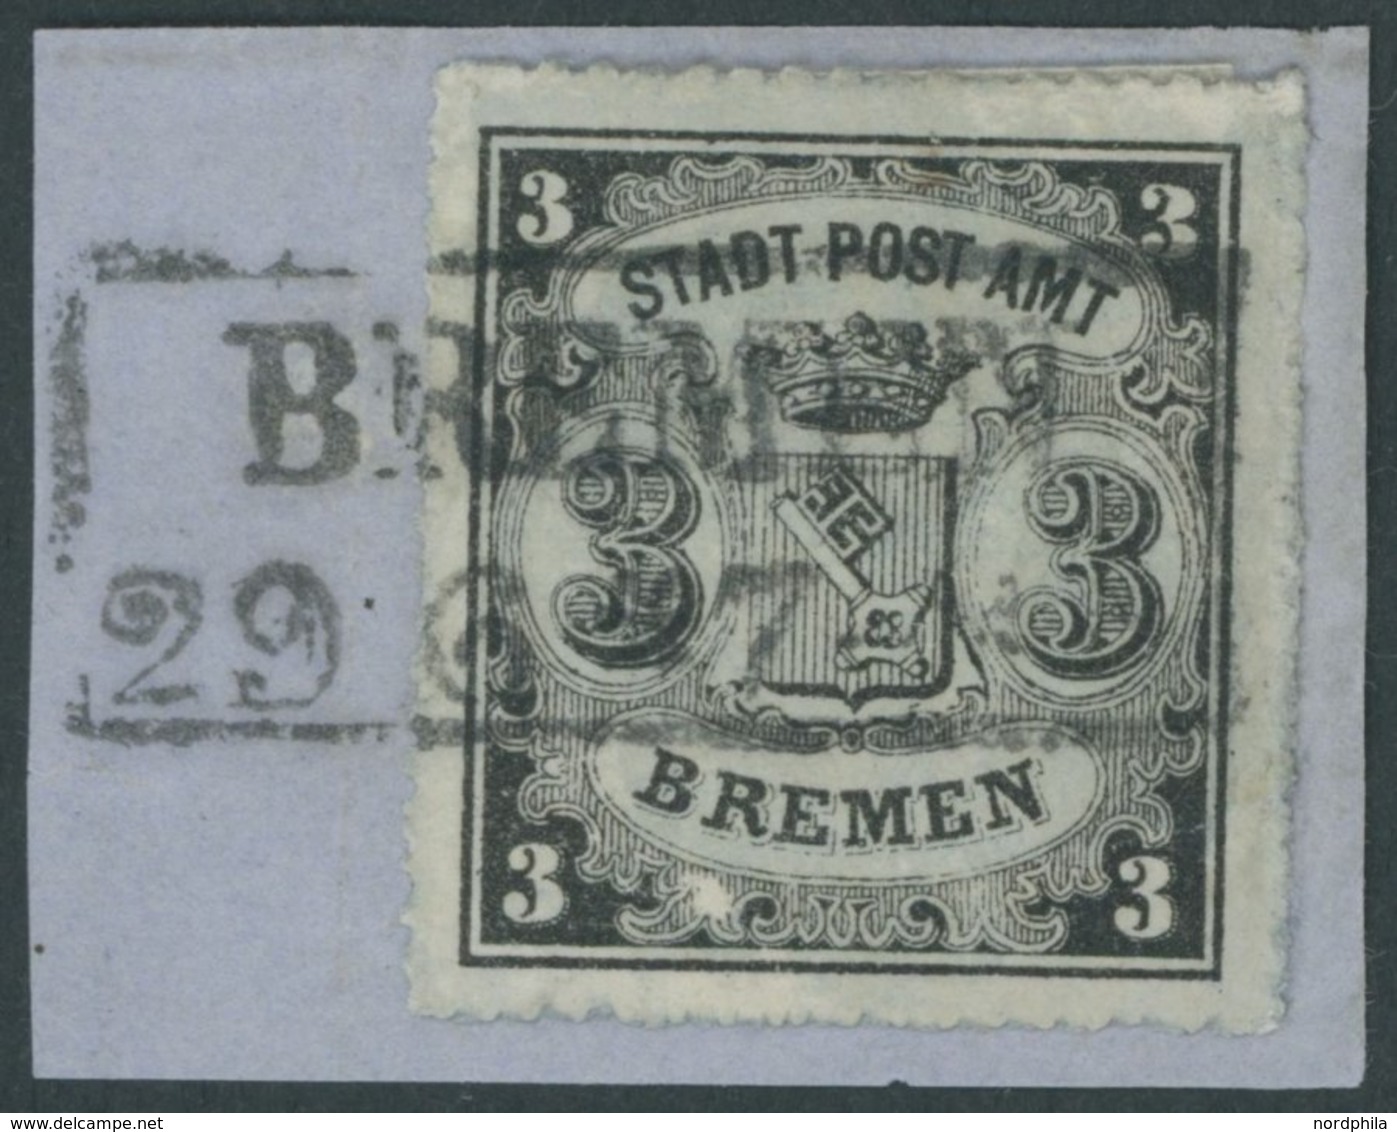 BREMEN 6x BrfStk, 1864, 3 Gr. Schwarz Auf Blaugrau, Type I, Zentrischer R2 BREMEN Auf Briefstück (Marke Zur Kontrolle Ge - Bremen